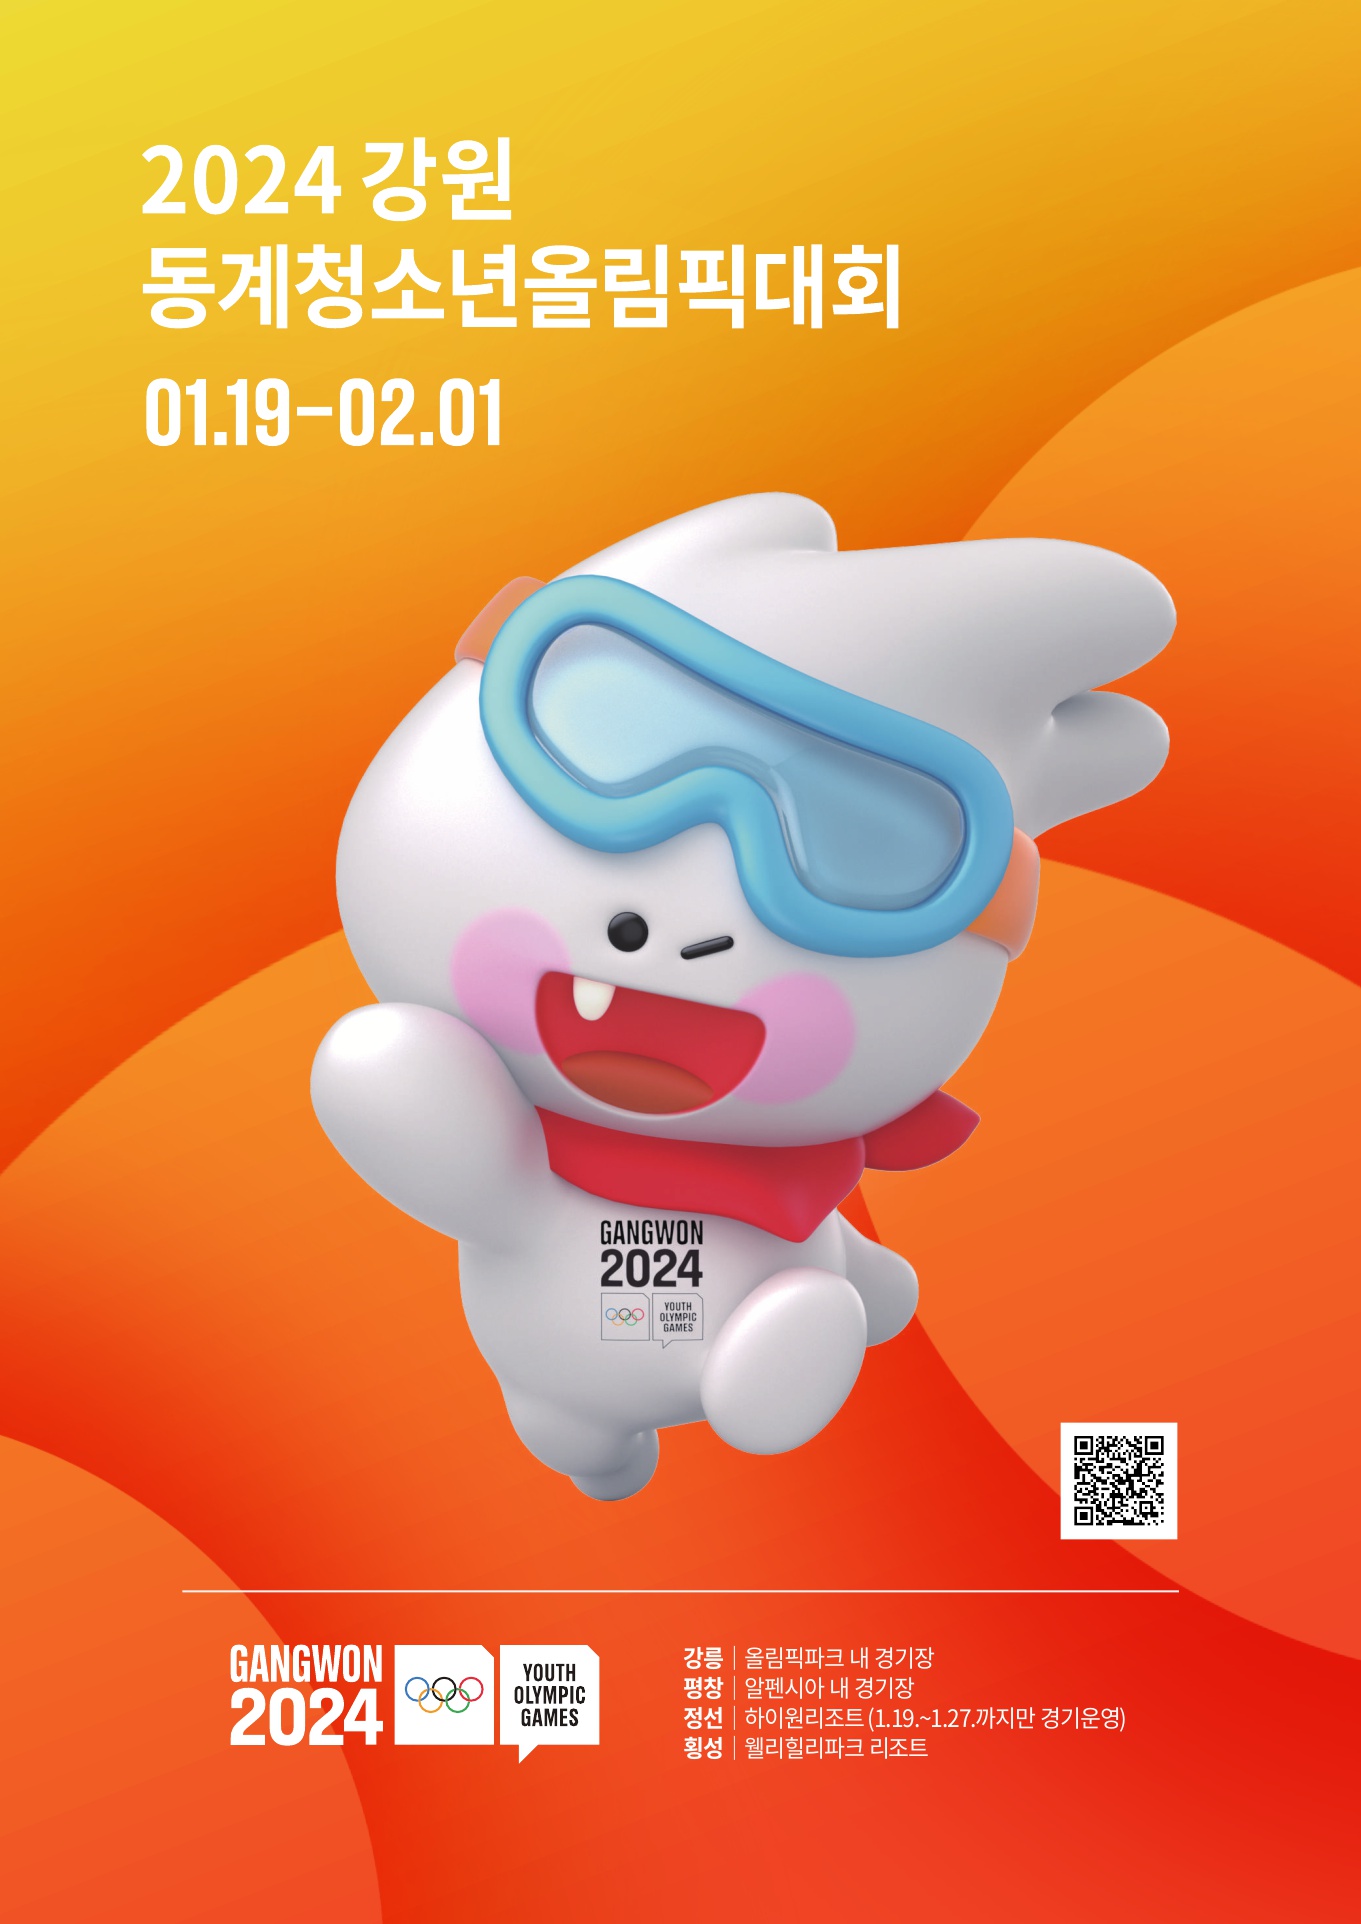 붙임2. 강원 2024 대회 리플릿 및 홍보 포스터_3.jpg